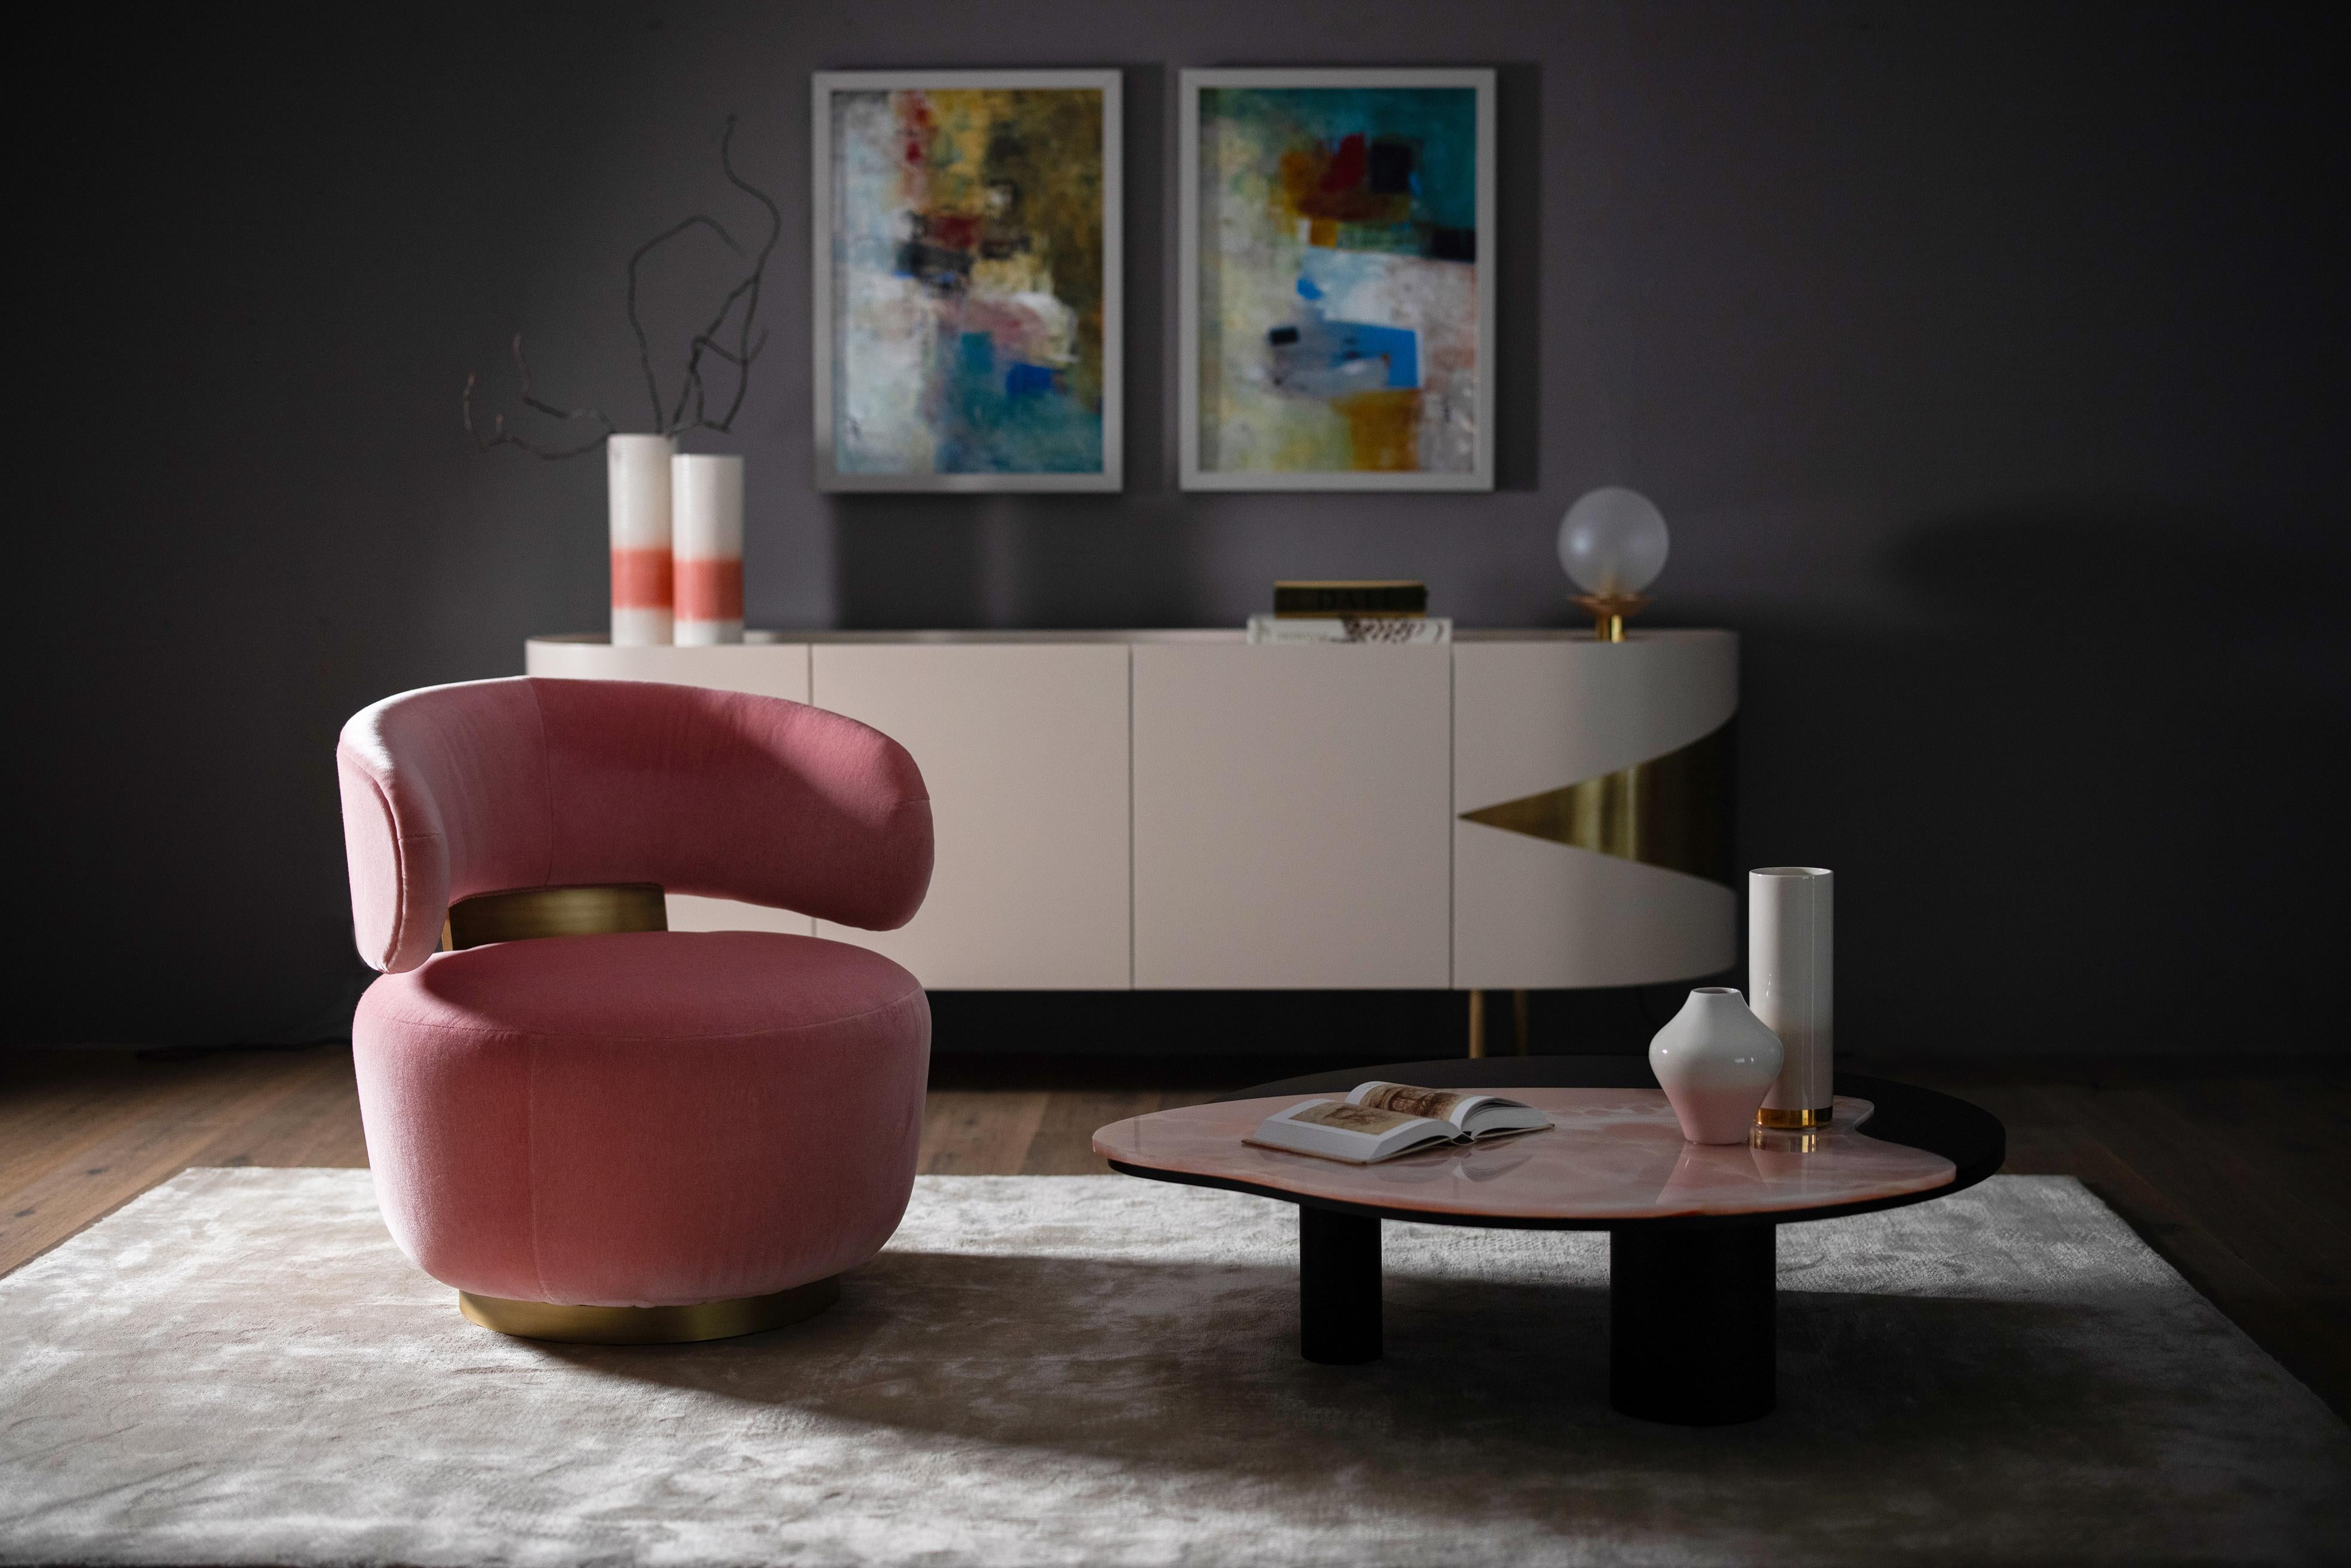 Caju Swivel Lounge Chair, Contemporary Collection, handgefertigt in Portugal - Europa von Greenapple.

Der Loungesessel Caju ist ein trendiges Möbelstück, das die organische Form einer Cashew verkörpert. Der mit rosafarbenem Samt gepolsterte